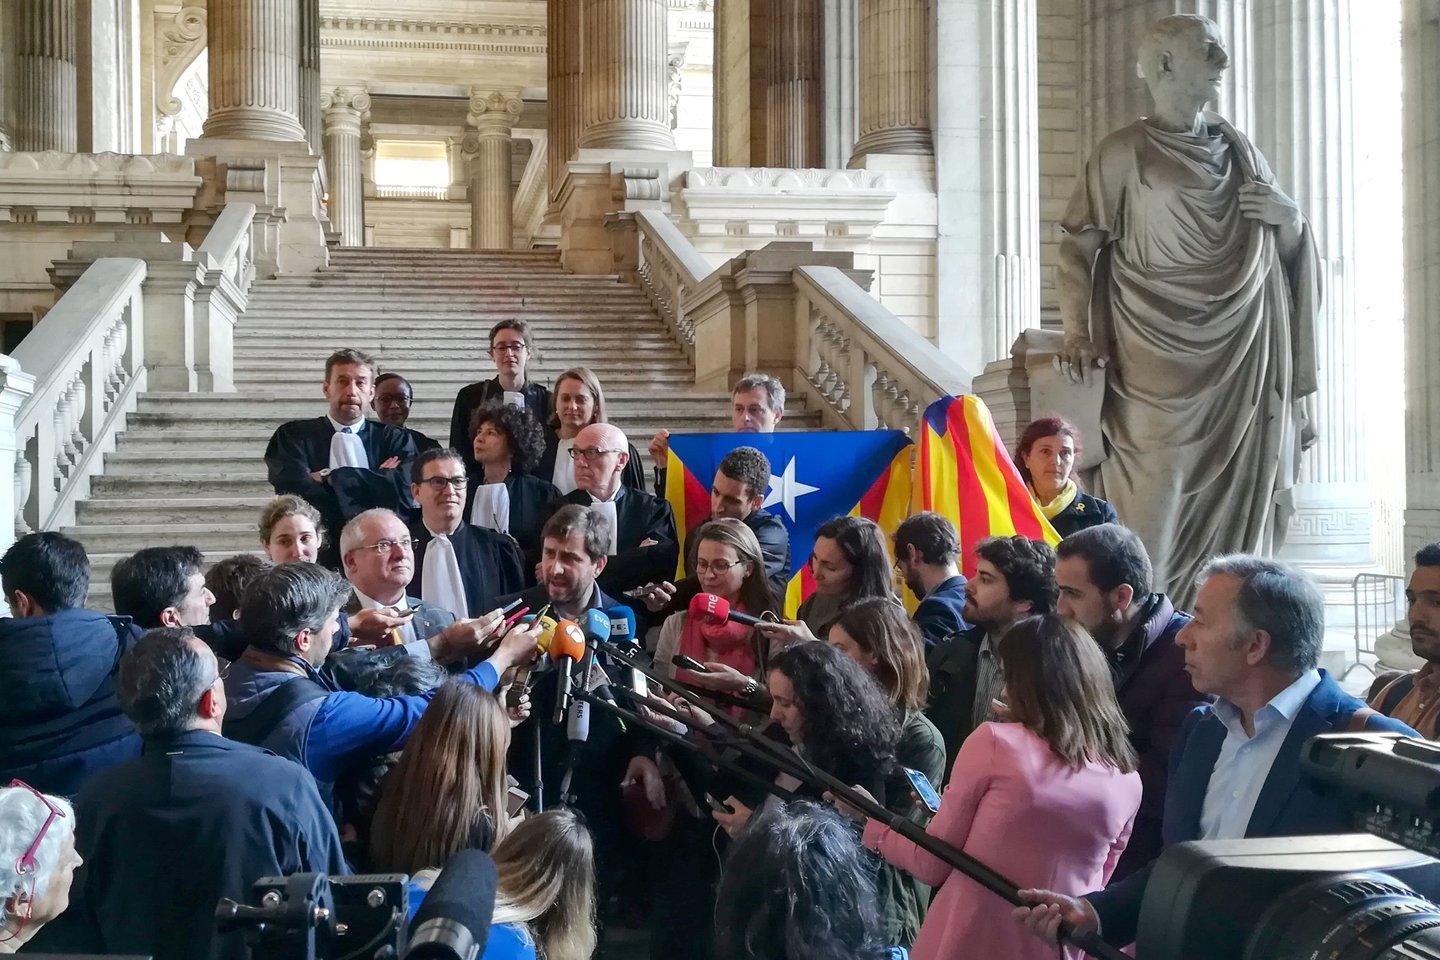  Vienas Belgijos teisėjas trečiadienį atmetė Madrido prašymą išduoti tris buvusius Katalonijos ministrus dėl jų vaidmens kontroversiškoje kampanijoje už šio Ispanijos regiono nepriklausomybę, informavo teismas.<br> AFP/Scanpix nuotr.